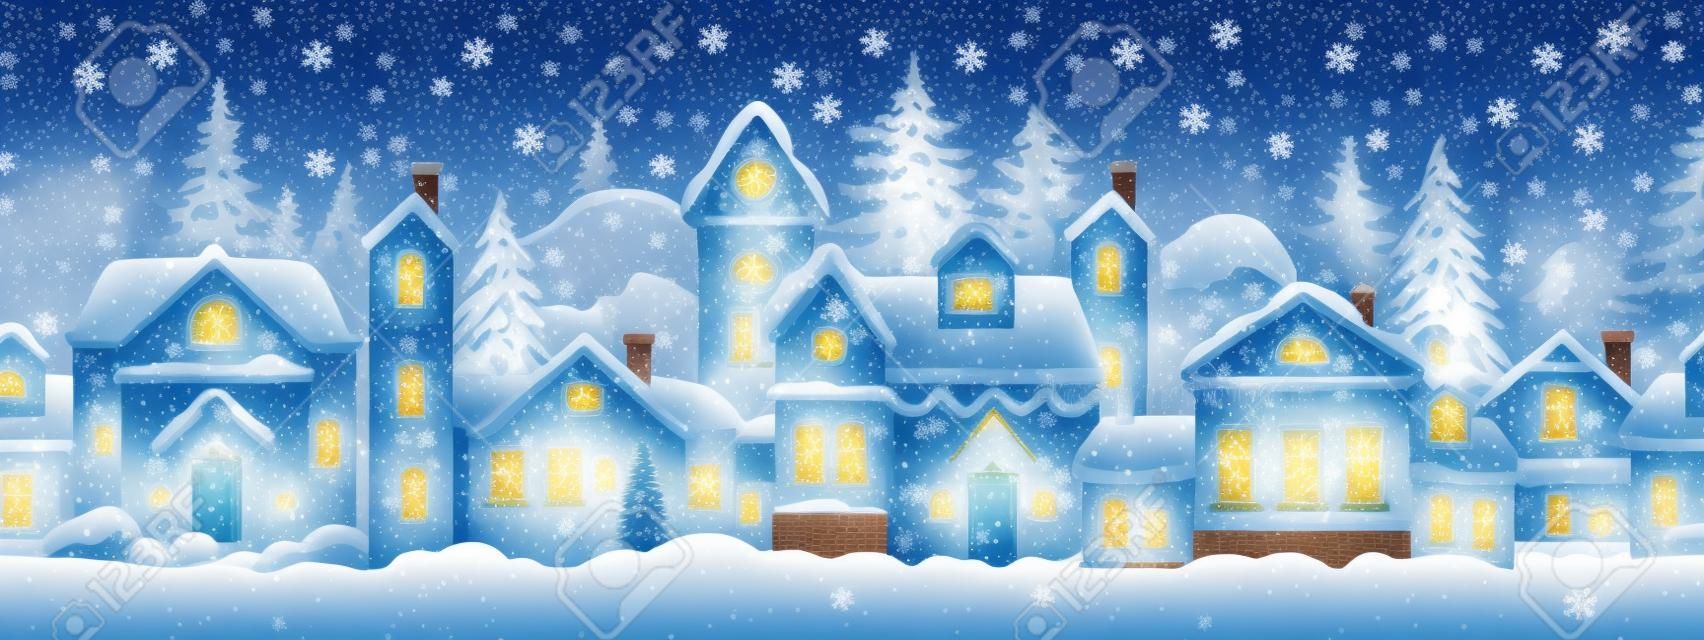 Bezszwowa świąteczna ilustracja z udekorowanymi domami, śniegiem, miastem, sylwetką drzew. świąteczne tło z wiejską ulicą, zaspy, nocne niebo, gwiazdy. baner fasady domów świątecznych